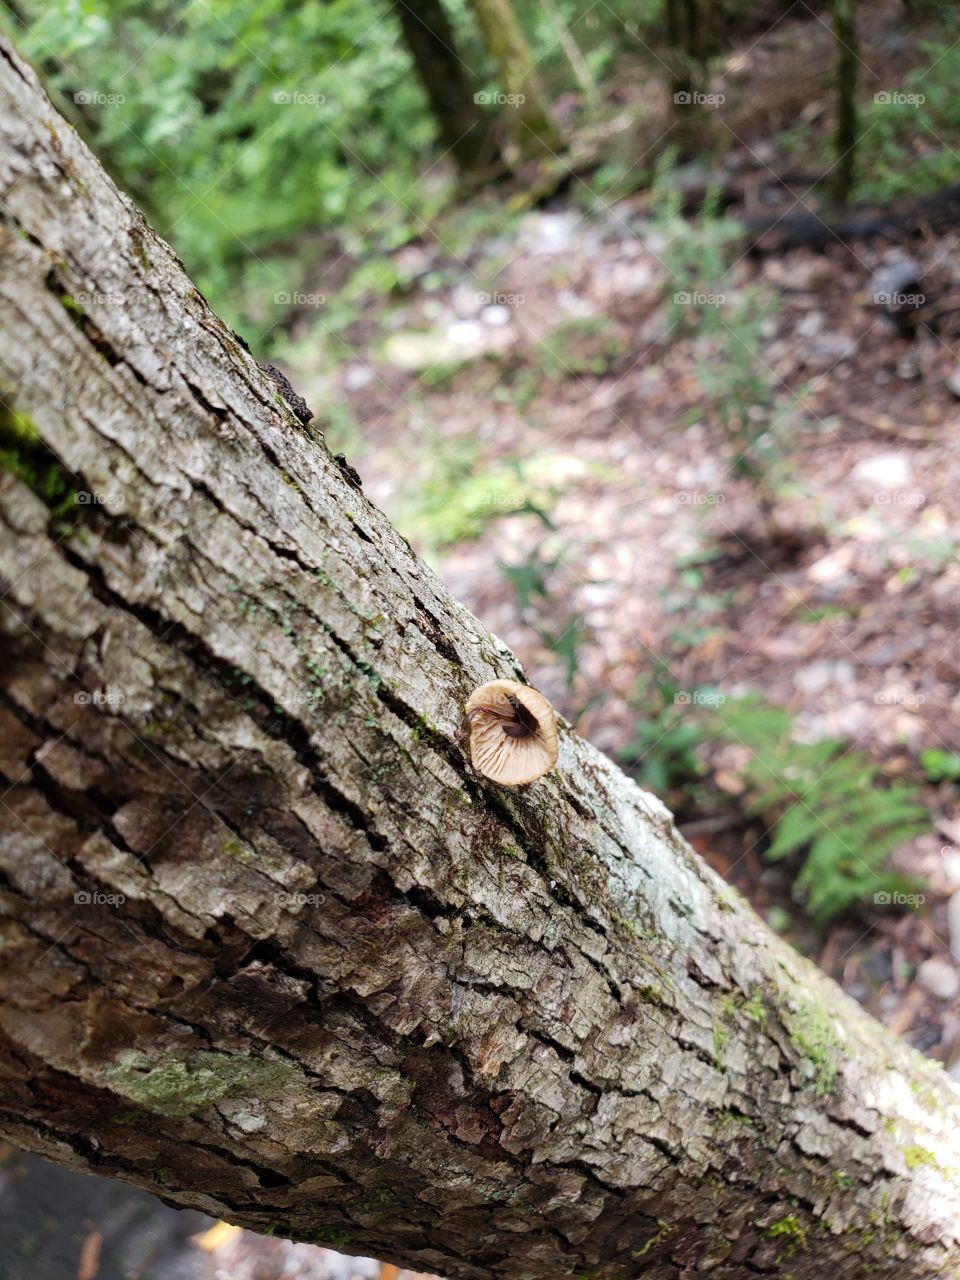 Slug in a mushroom on a tree.